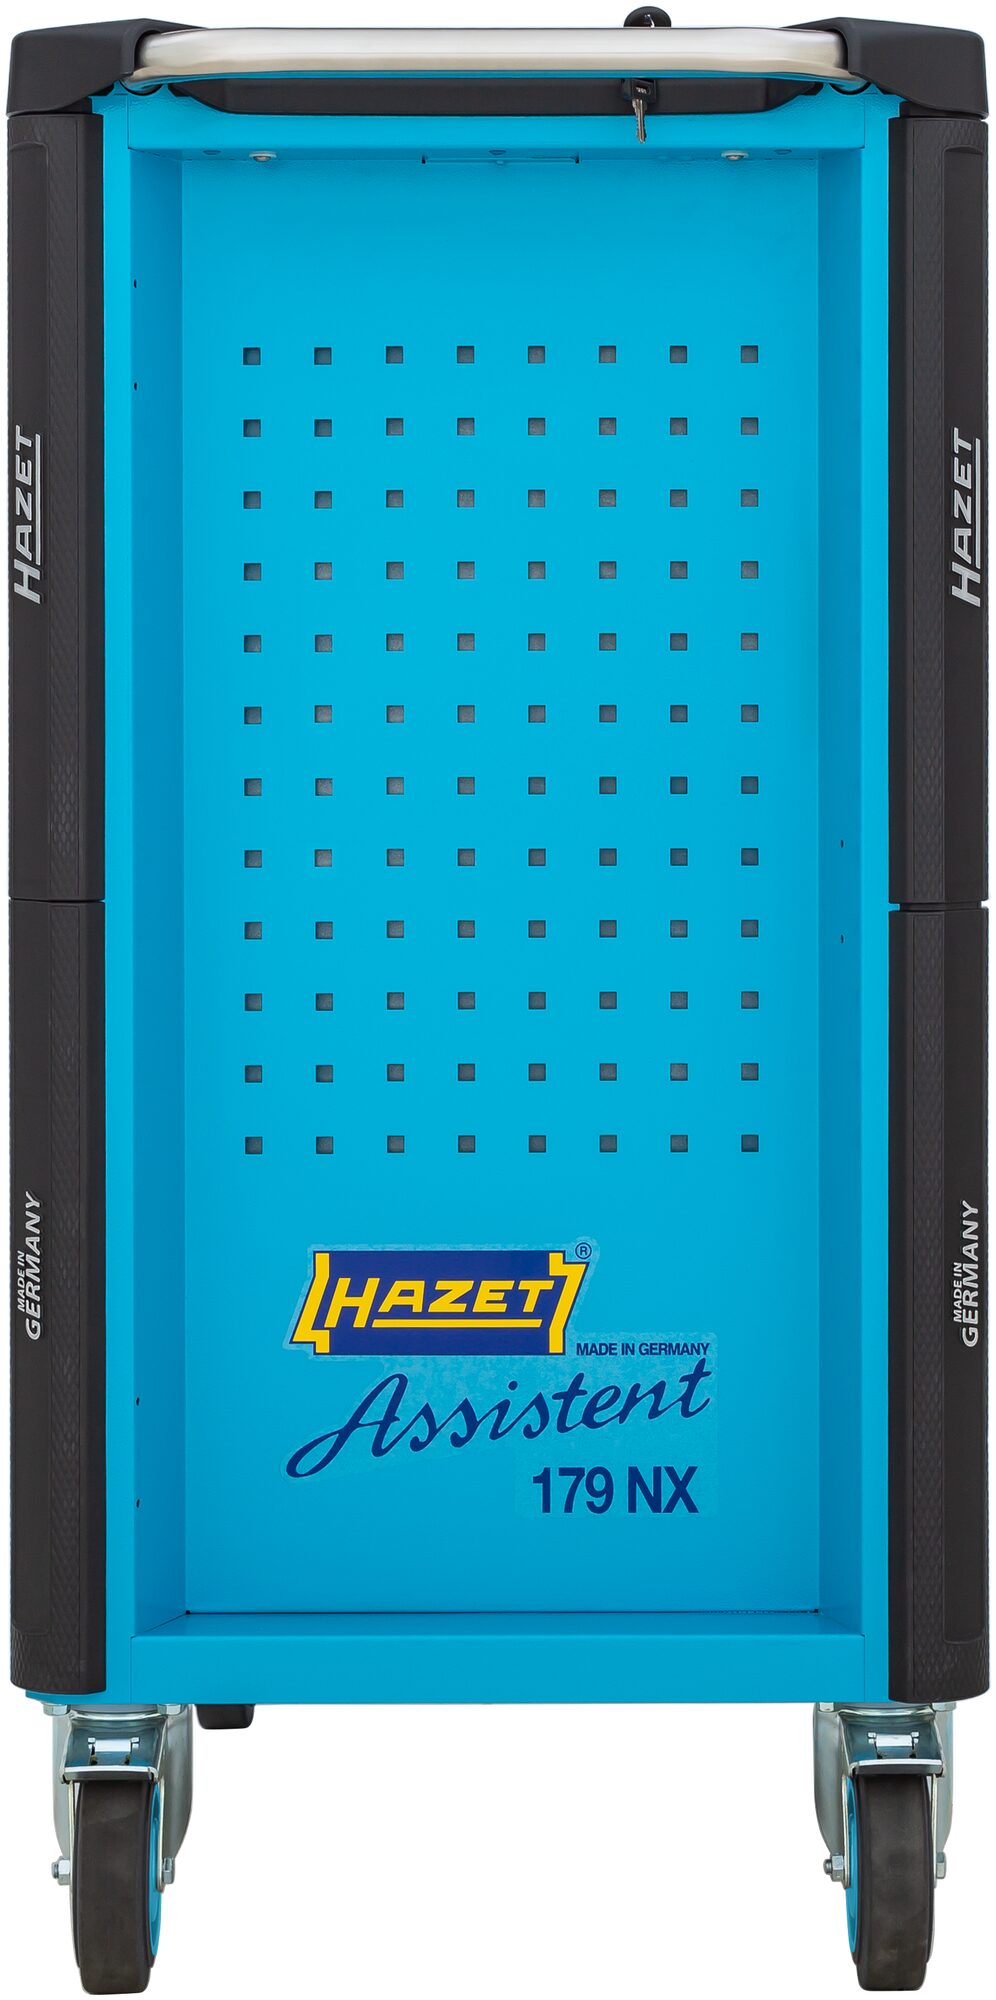 HAZET Werkstattwagen Assistent 179NX-8/206 · Werkzeuge: 206